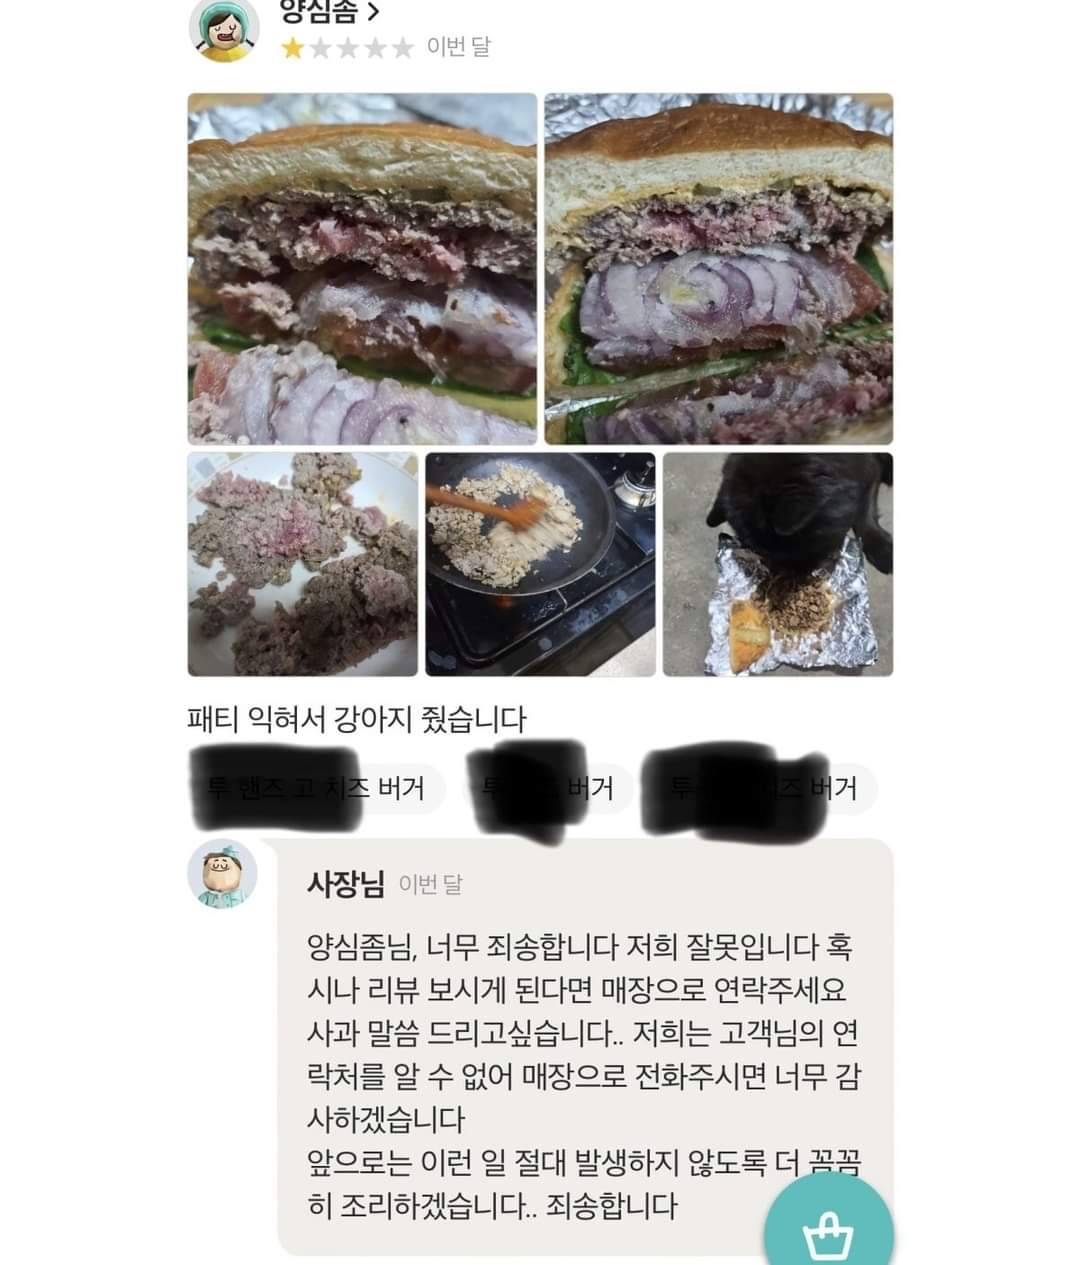 배민 리뷰 개밥 논란